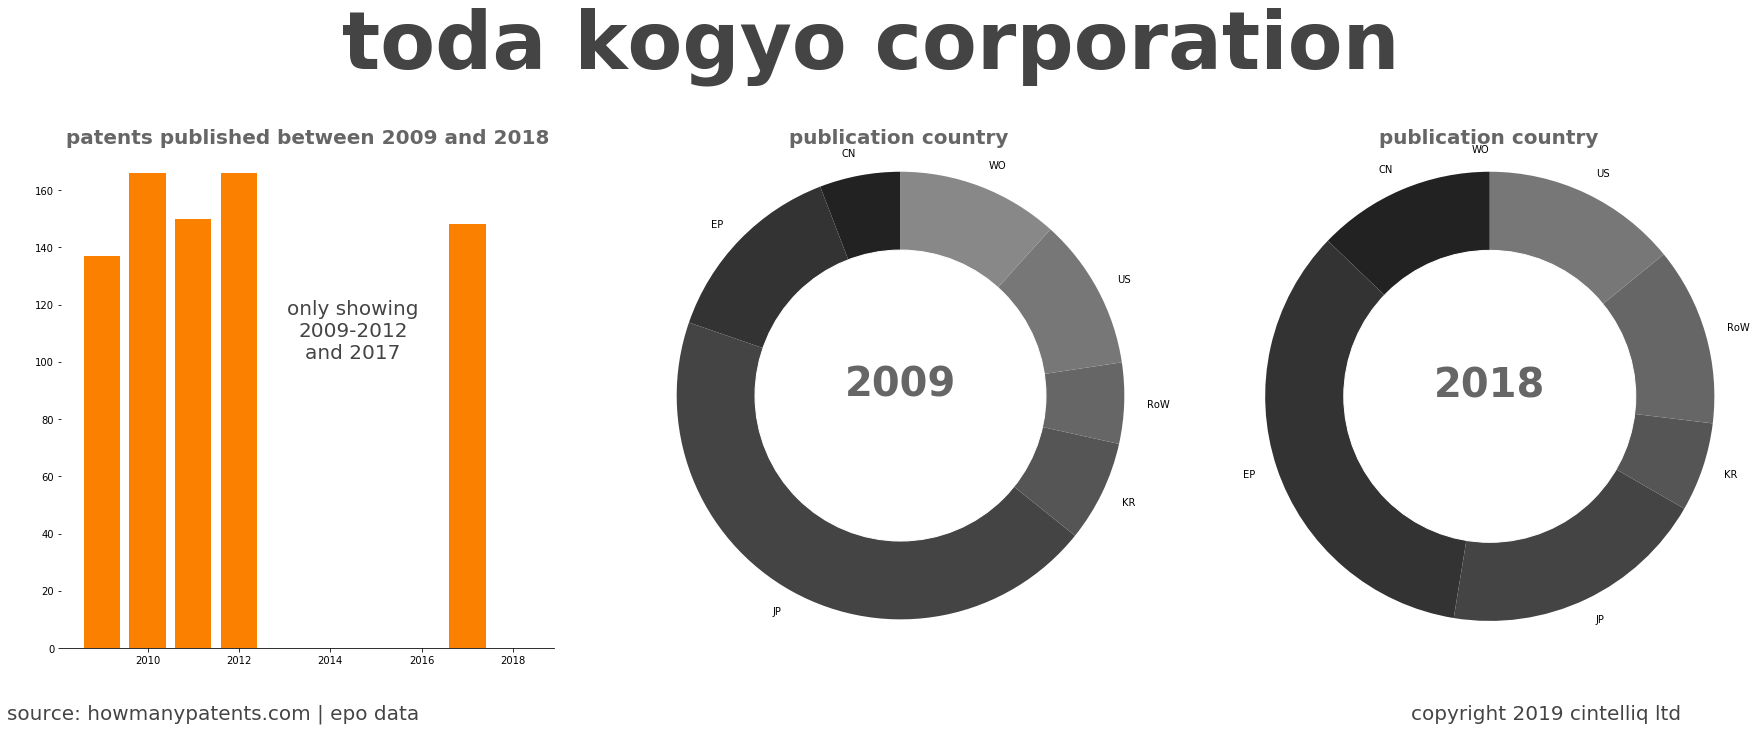 summary of patents for Toda Kogyo Corporation